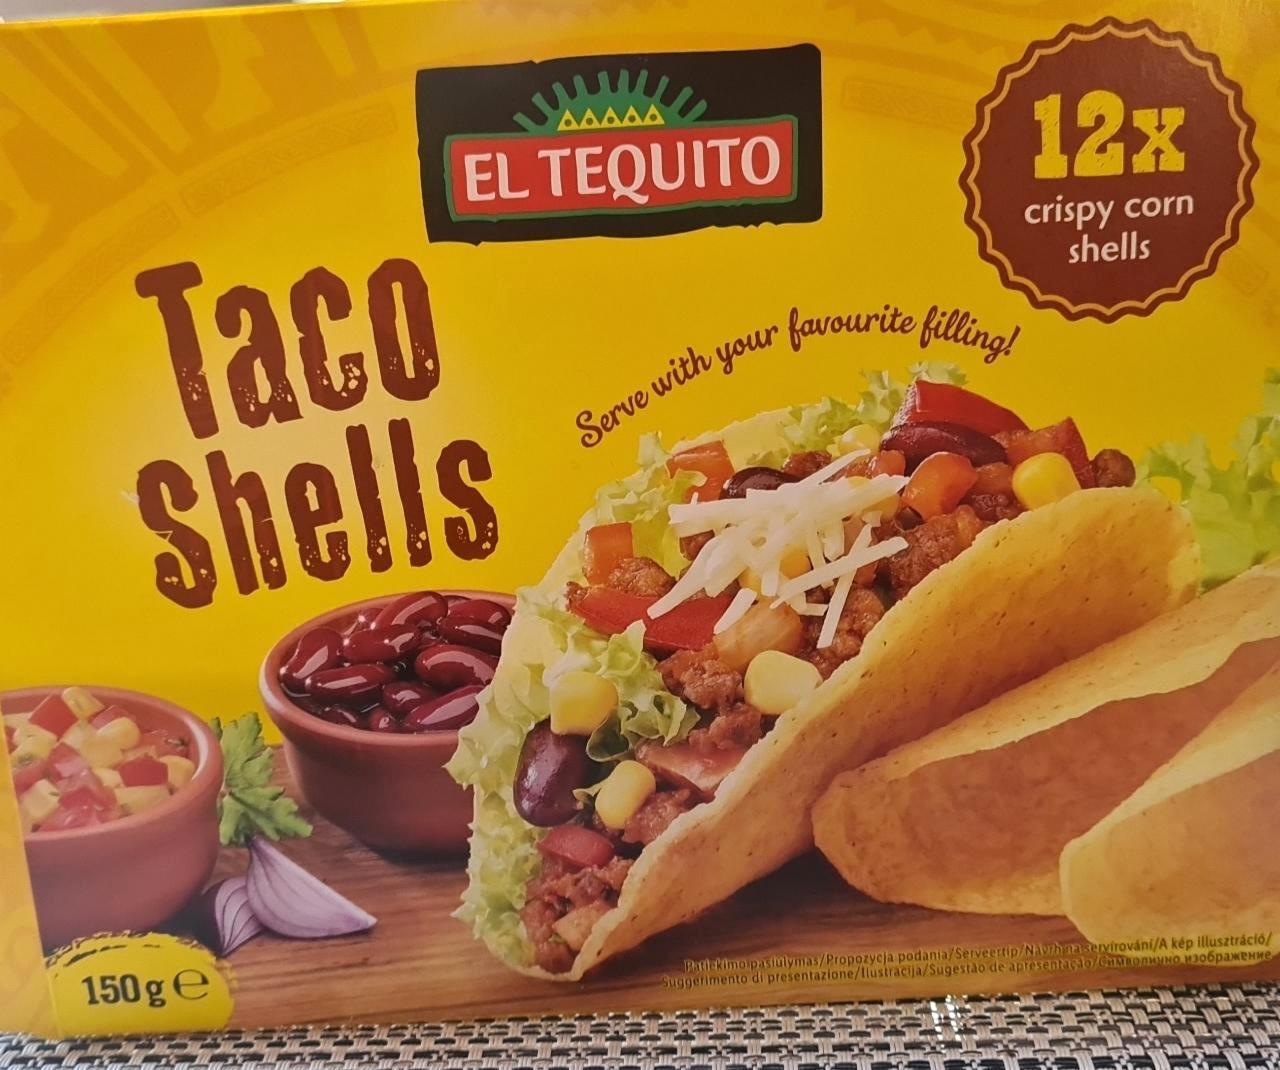 Taco Schells El Tequito - kalória, kJ és tápértékek